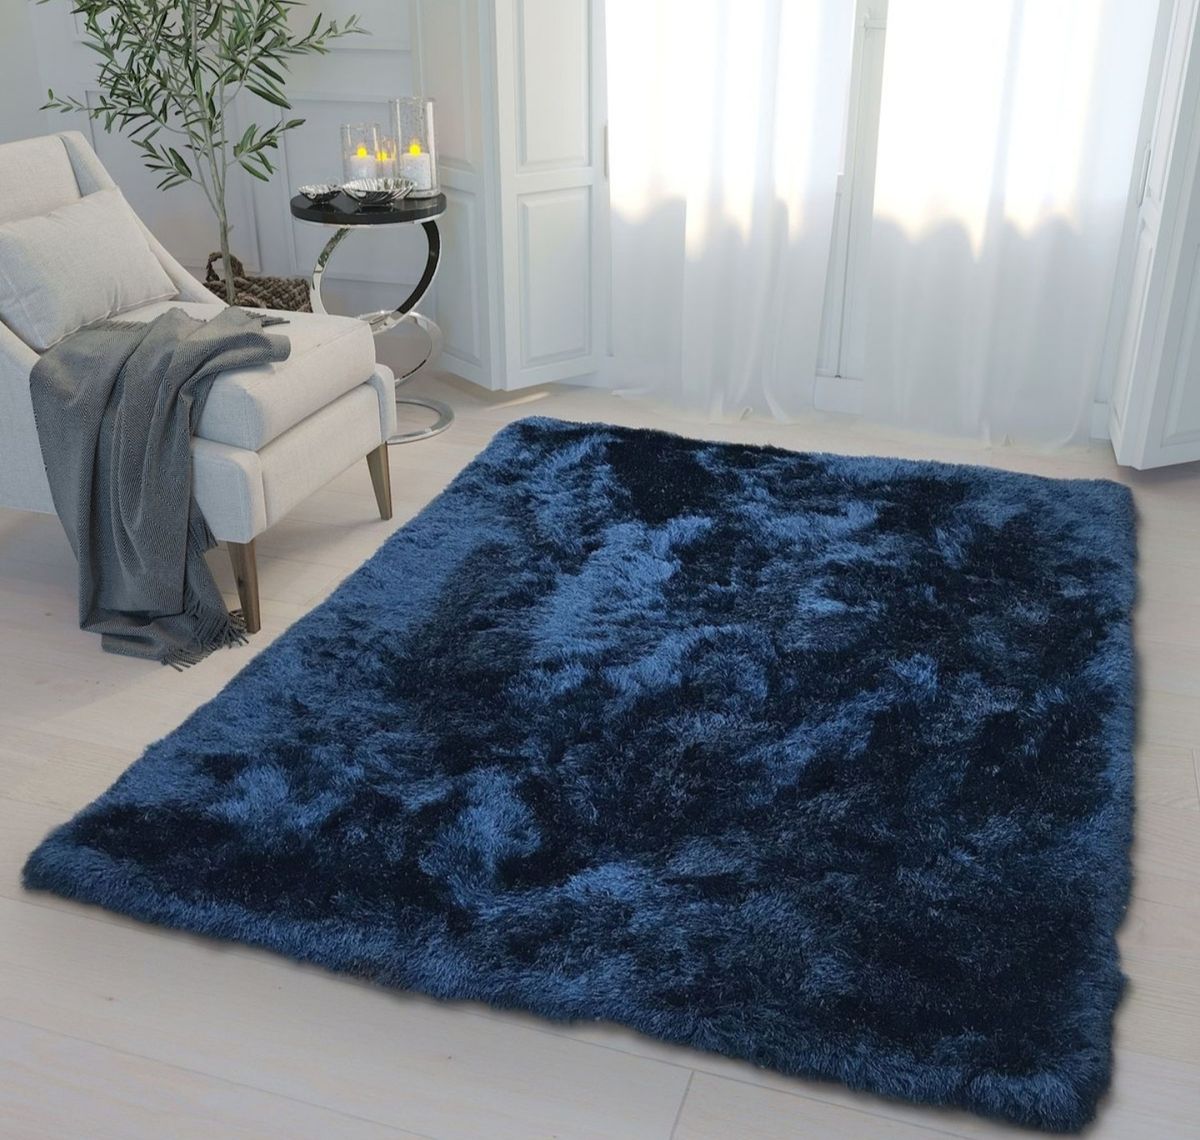 Giảm giá lên đến 50% trên các tấm thảm cho phòng khách và phòng ngủ. Không nên bỏ lỡ cơ hội tuyệt vời này để tìm kiếm một tấm thảm đẹp giá rẻ nhưng vẫn đảm bảo chất lượng và độ bền.